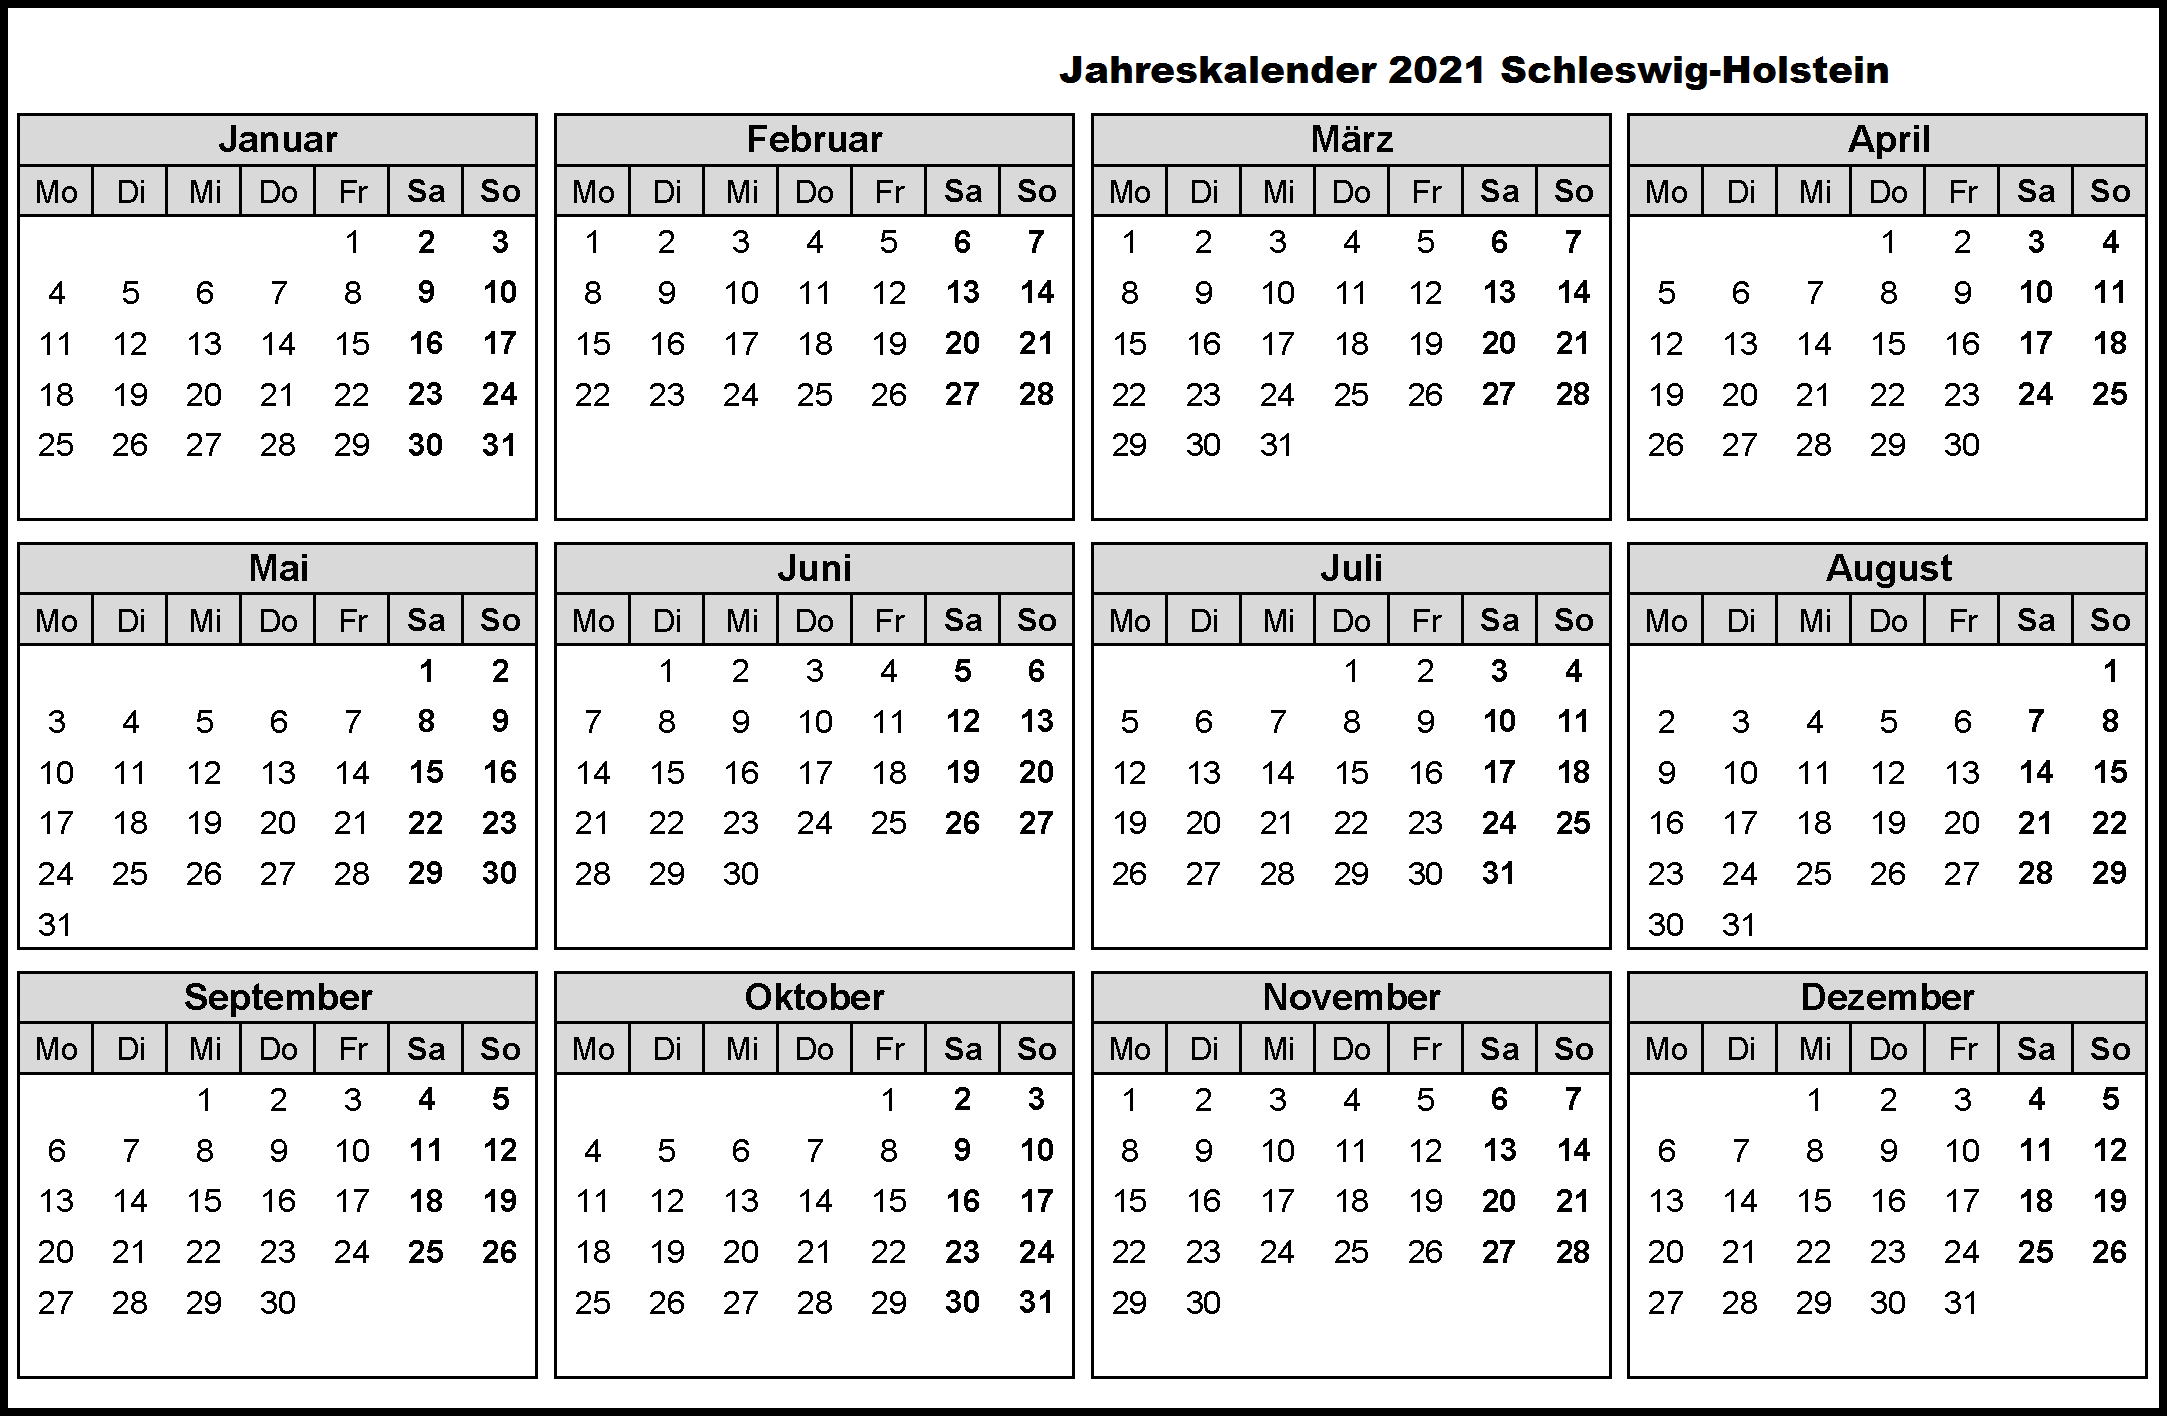 Jahreskalender 2021 Schleswig-Holstein PDF | The Beste ...